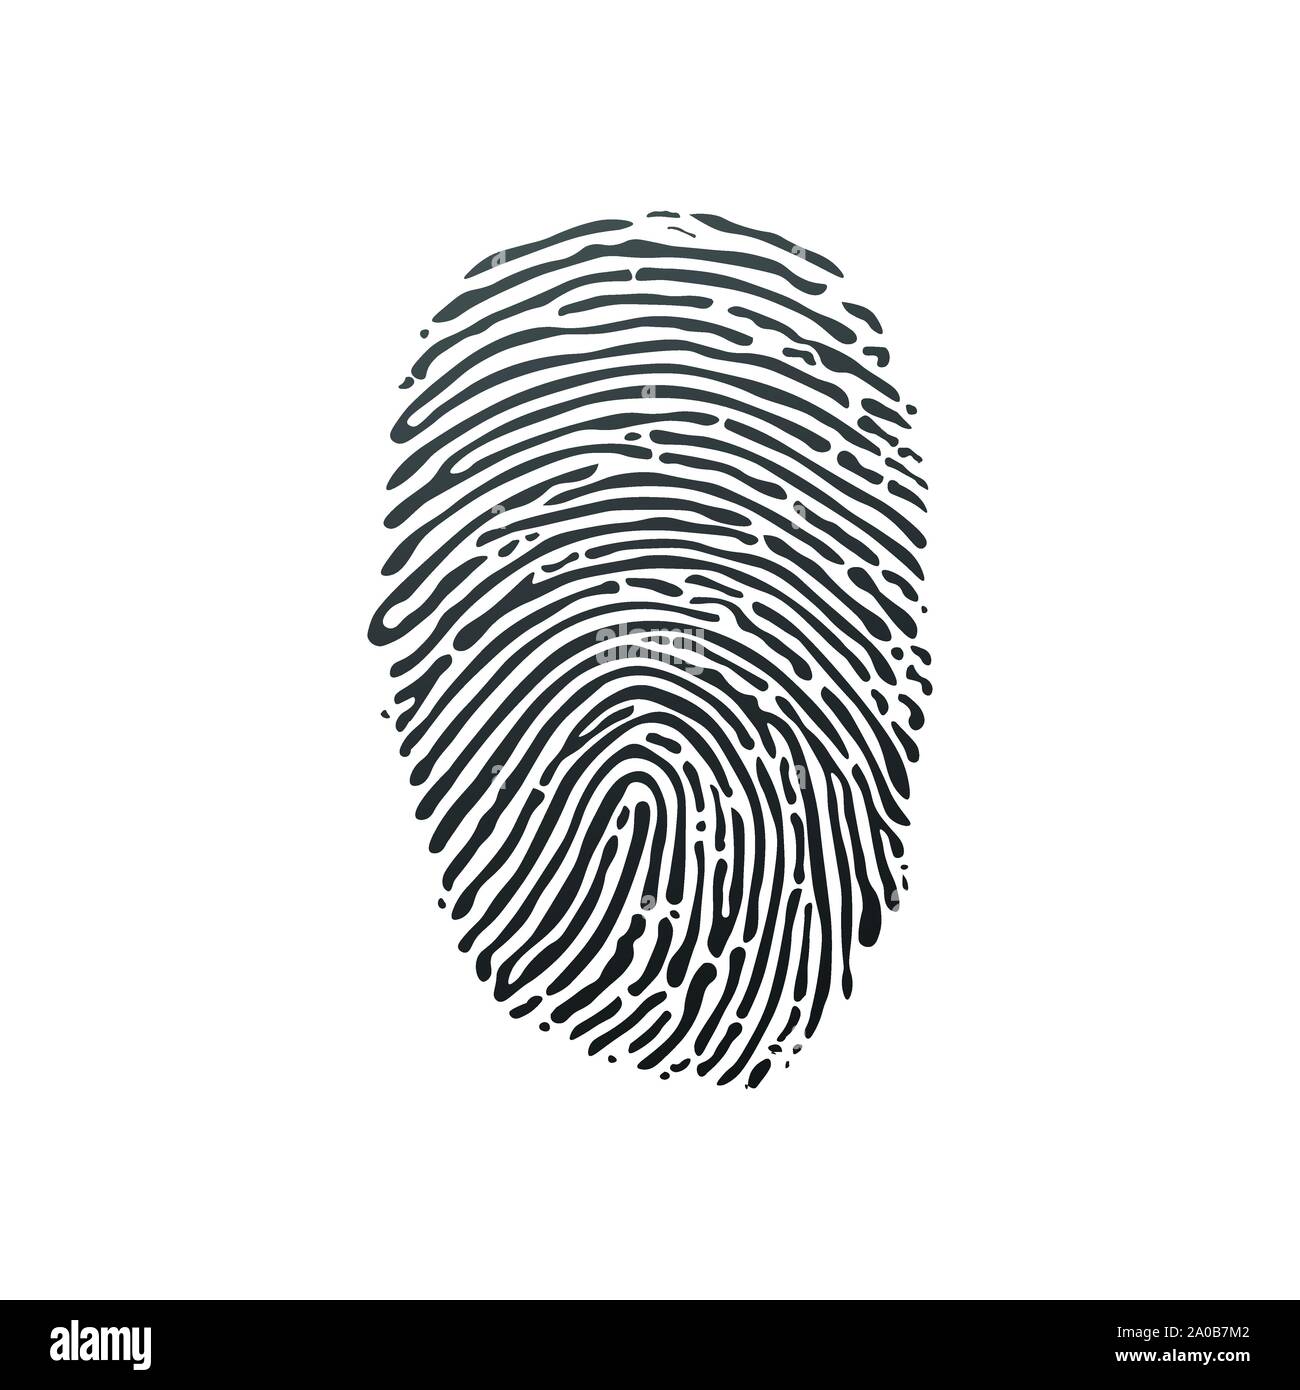 Black fingerprint shape. secure identification. Stock Vector illustration isolated on white background Stock Vector